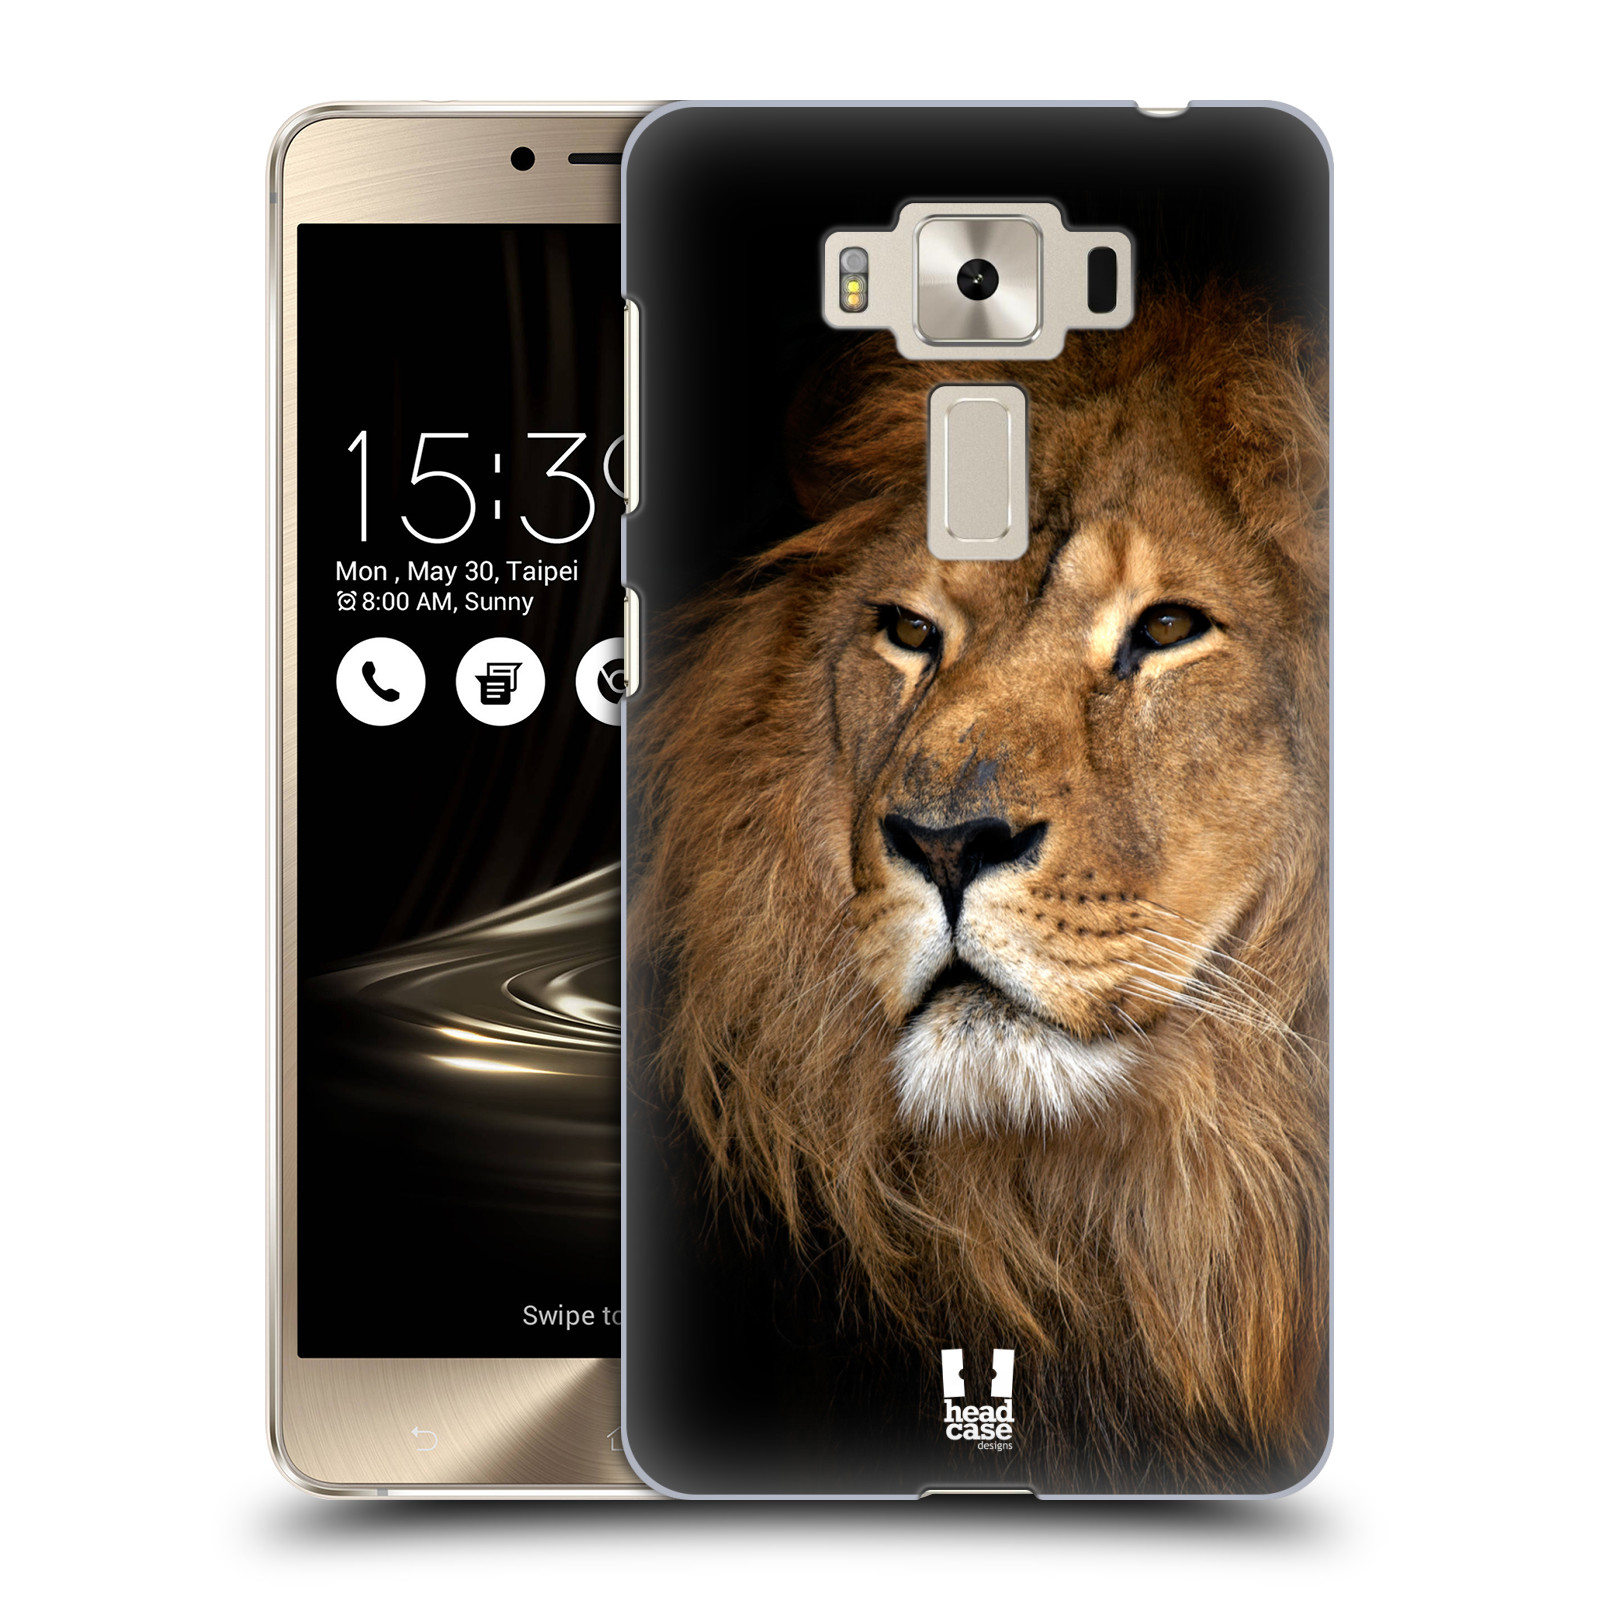 HEAD CASE plastový obal na mobil Asus Zenfone 3 DELUXE ZS550KL vzor Divočina, Divoký život a zvířata foto LEV KRÁL ZVÍŘAT